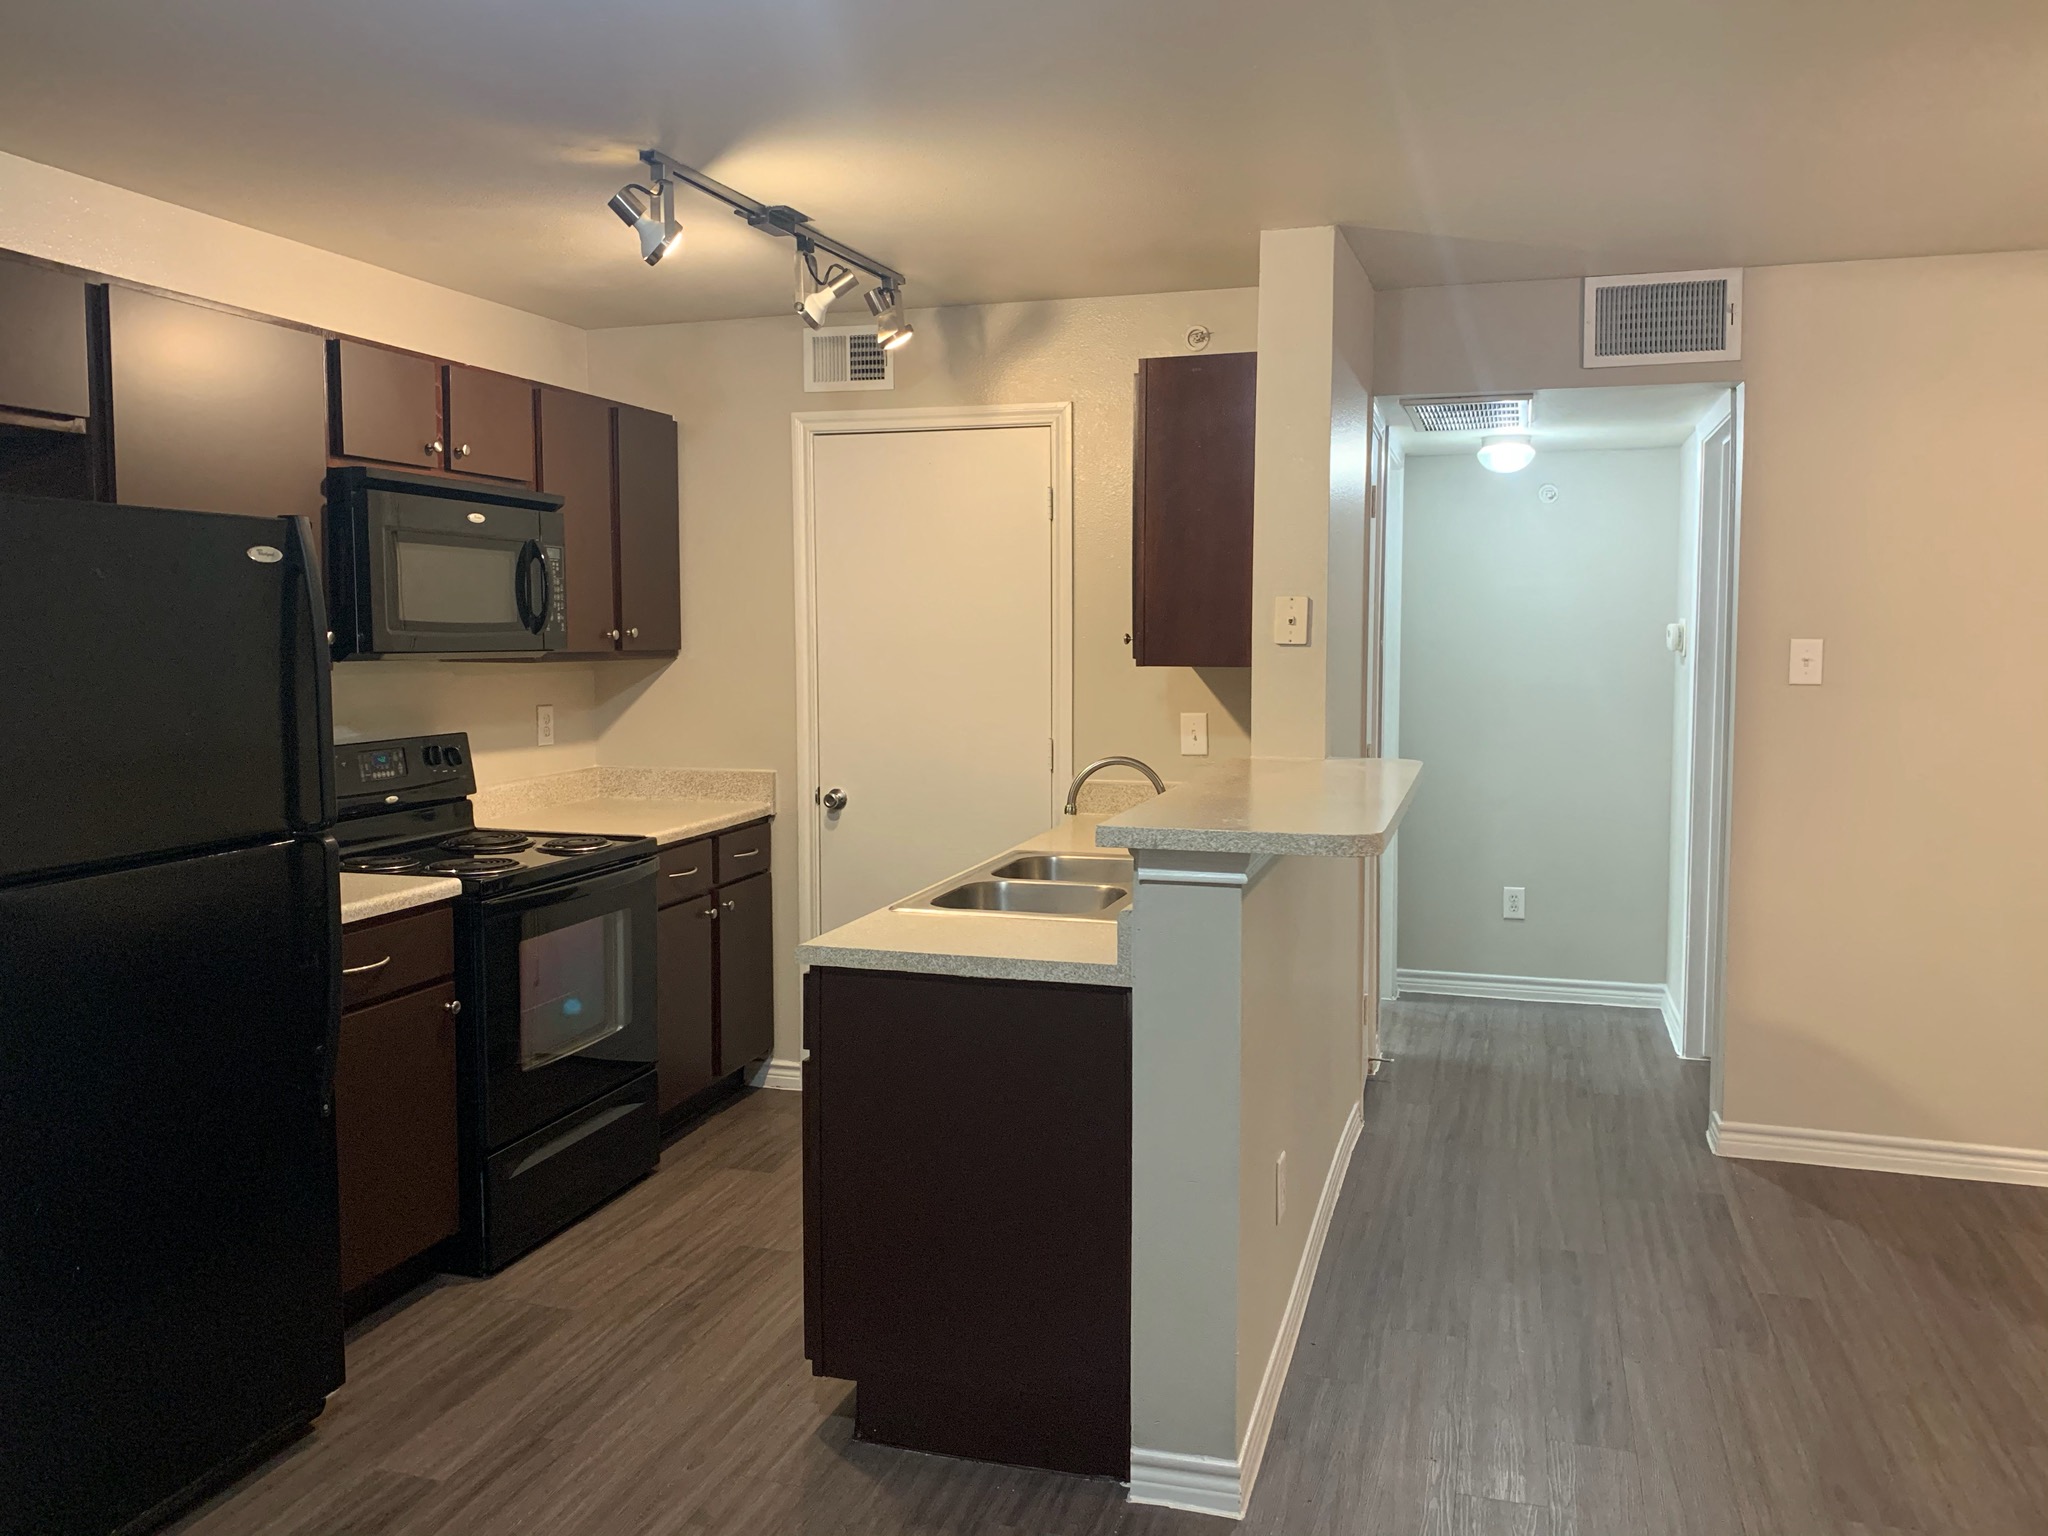 Domain Apartments for Rent - Austin, TX - 568 Rentals